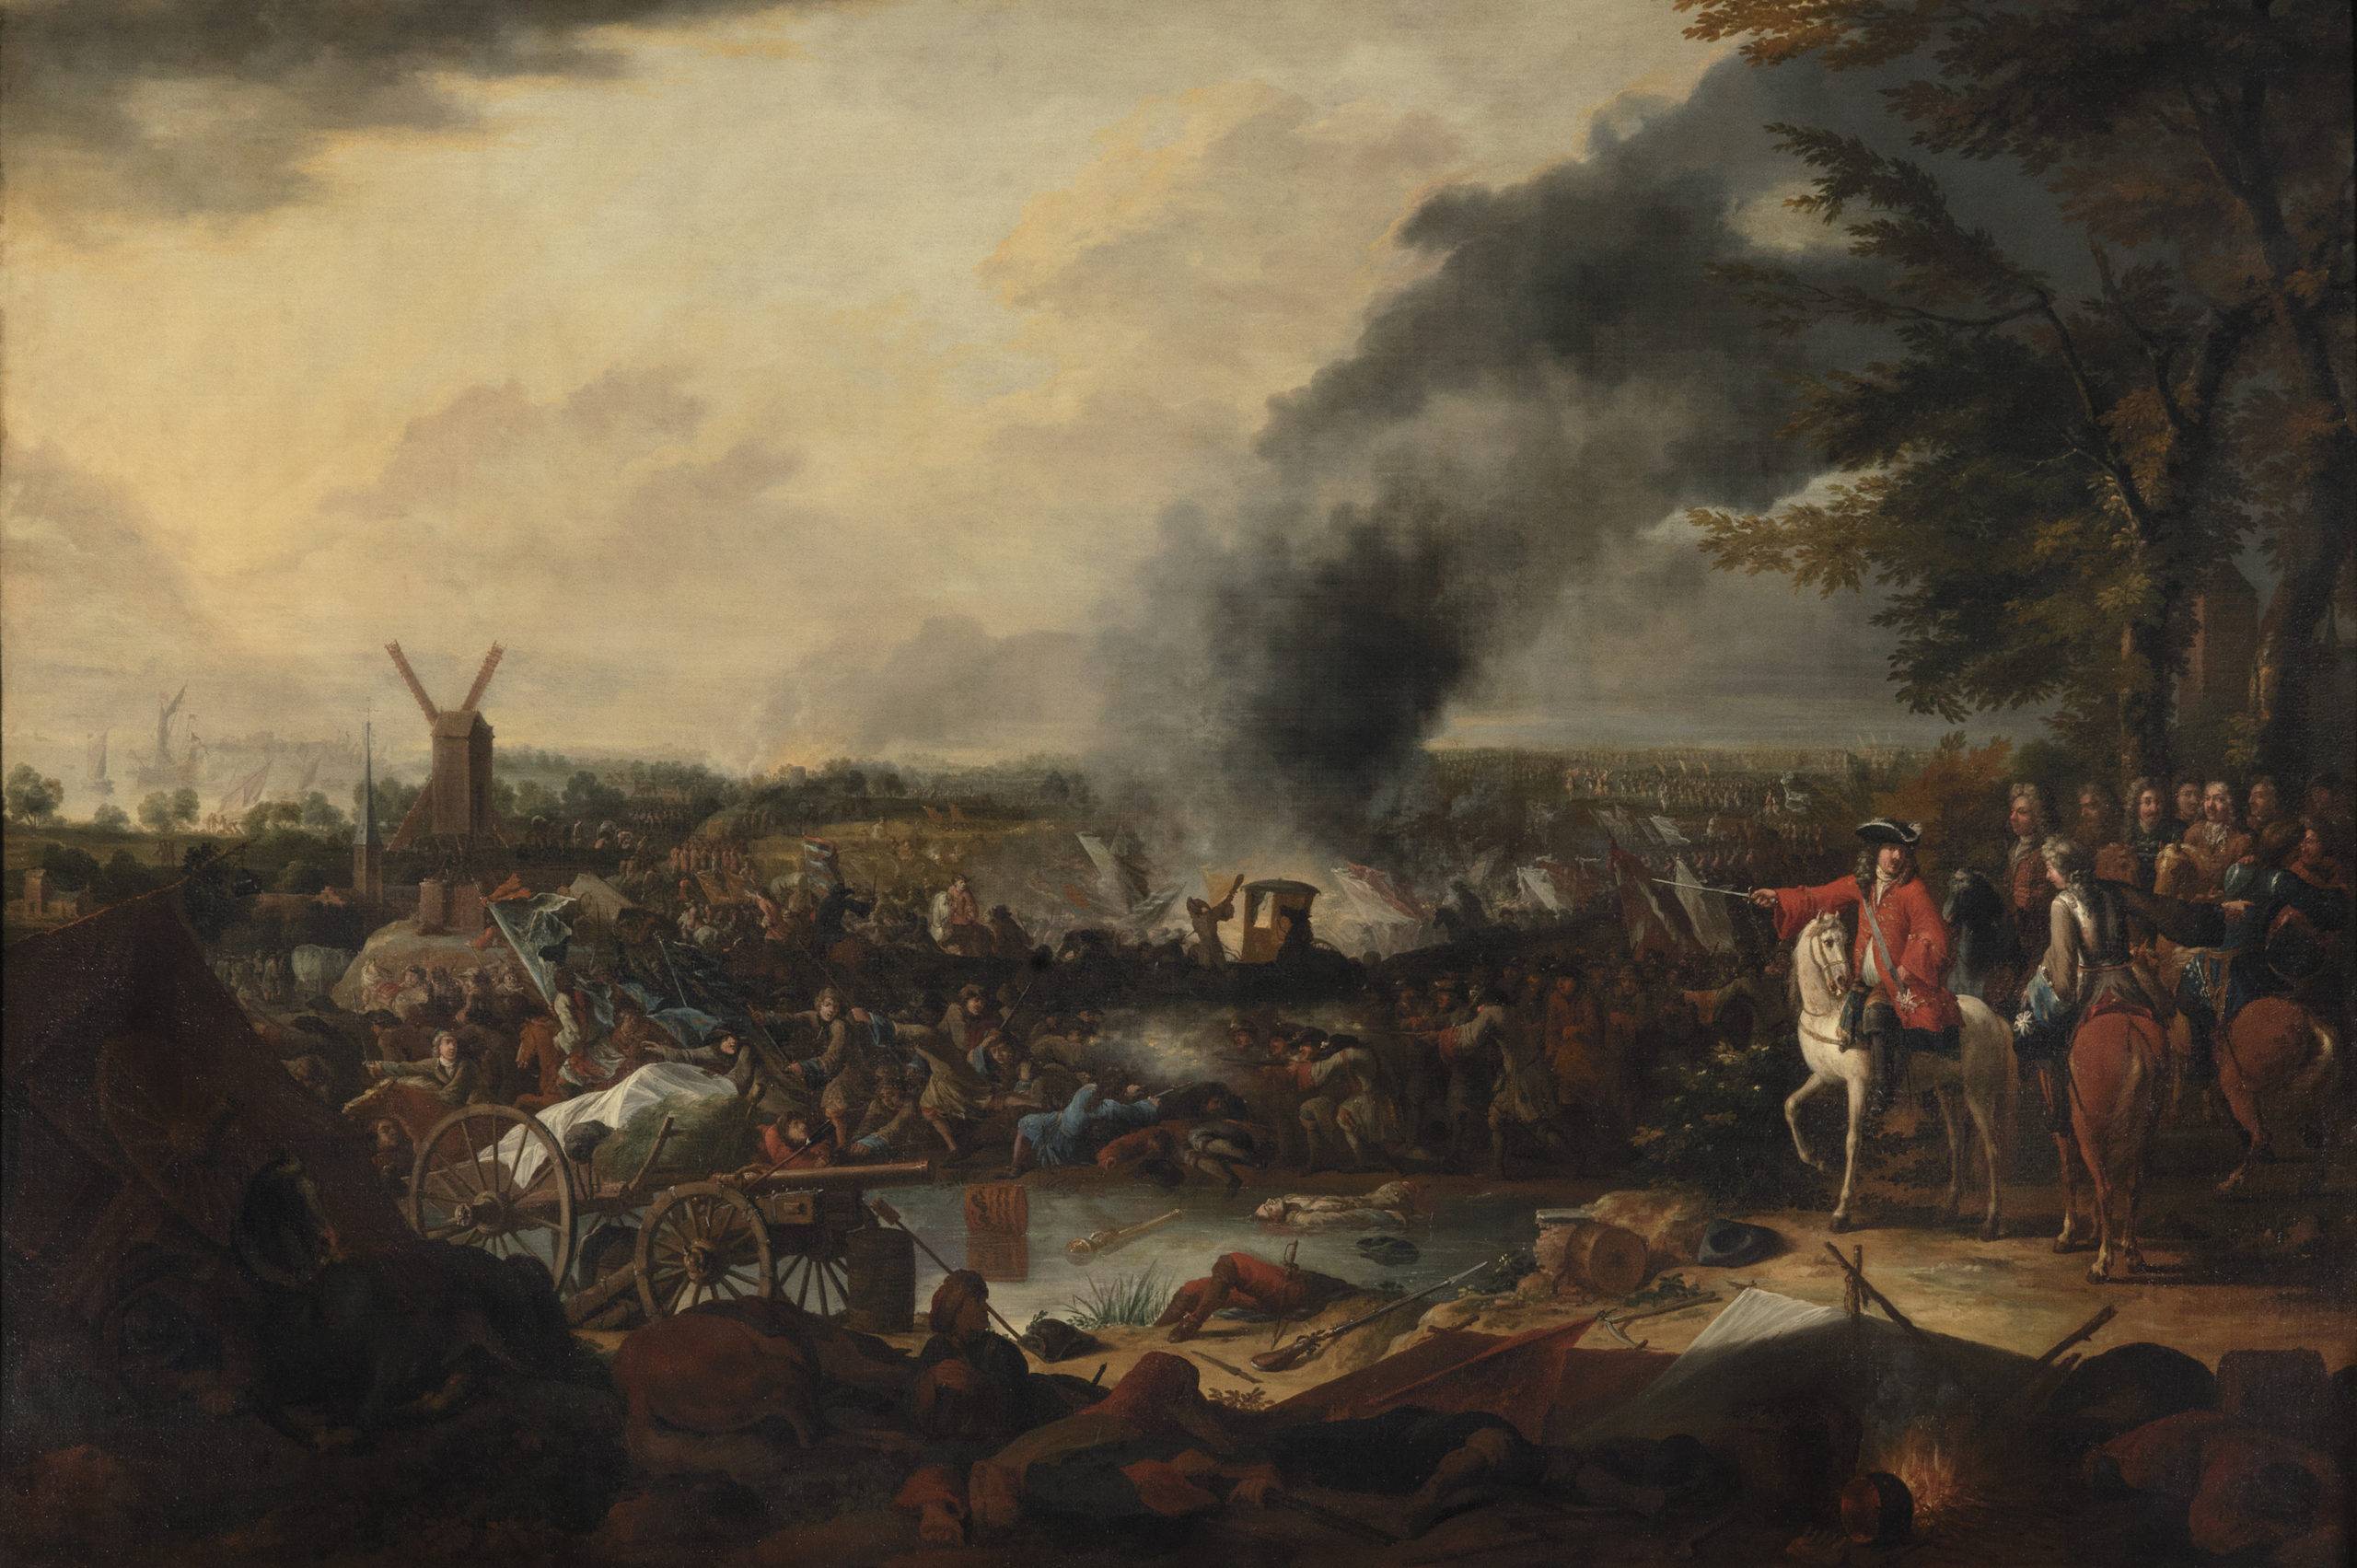 Bataille d'Eckeren (1703), victoire franco-espagnole sur les Provinces-Unies. Peinture de Jasper Brauers, Museum Plantin-Moretus, Anvers.